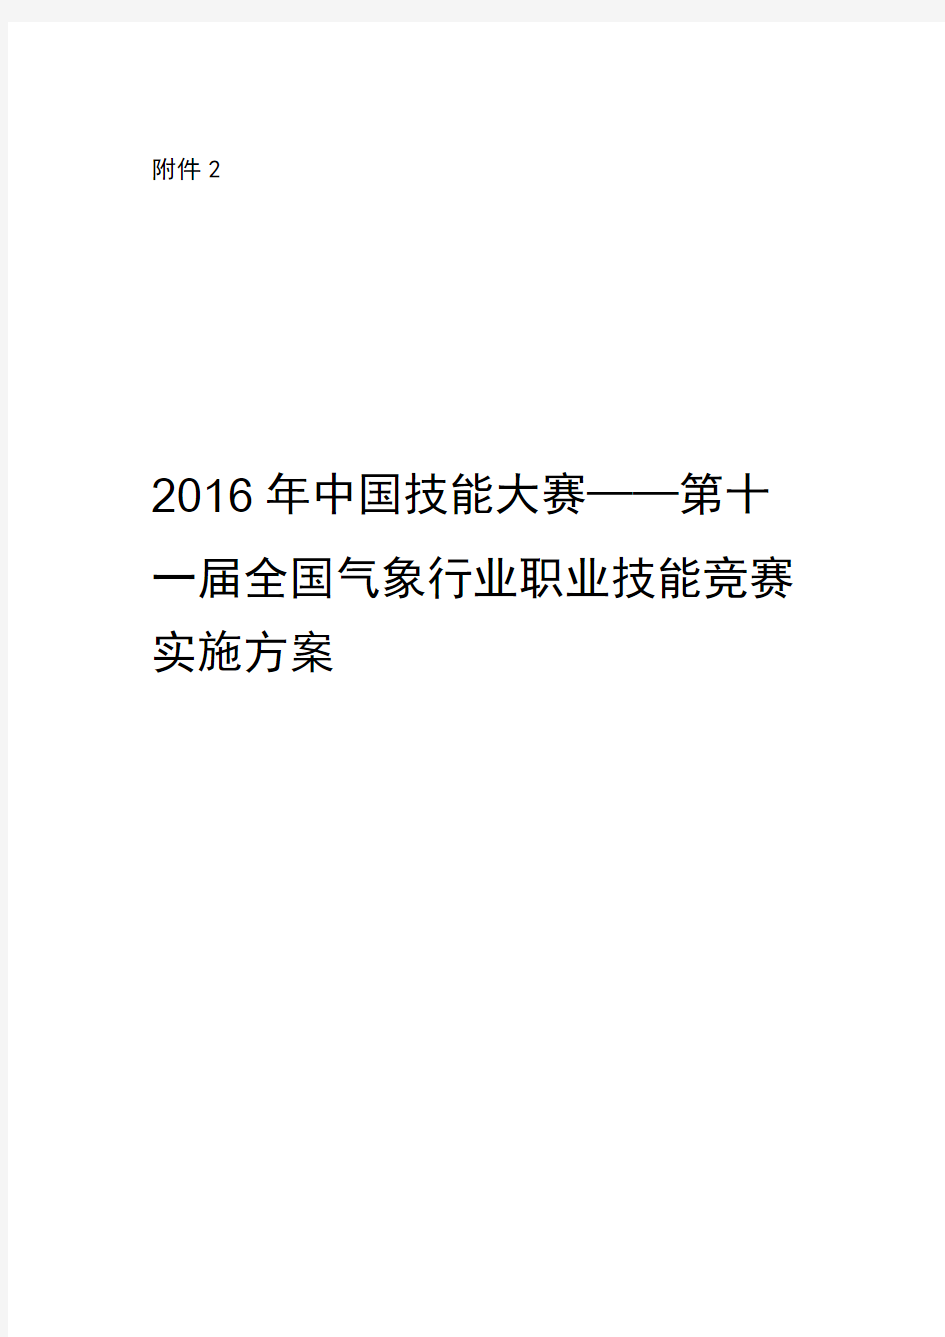 2016年中国技能大赛——全国气象行业职业技能竞赛实施方案